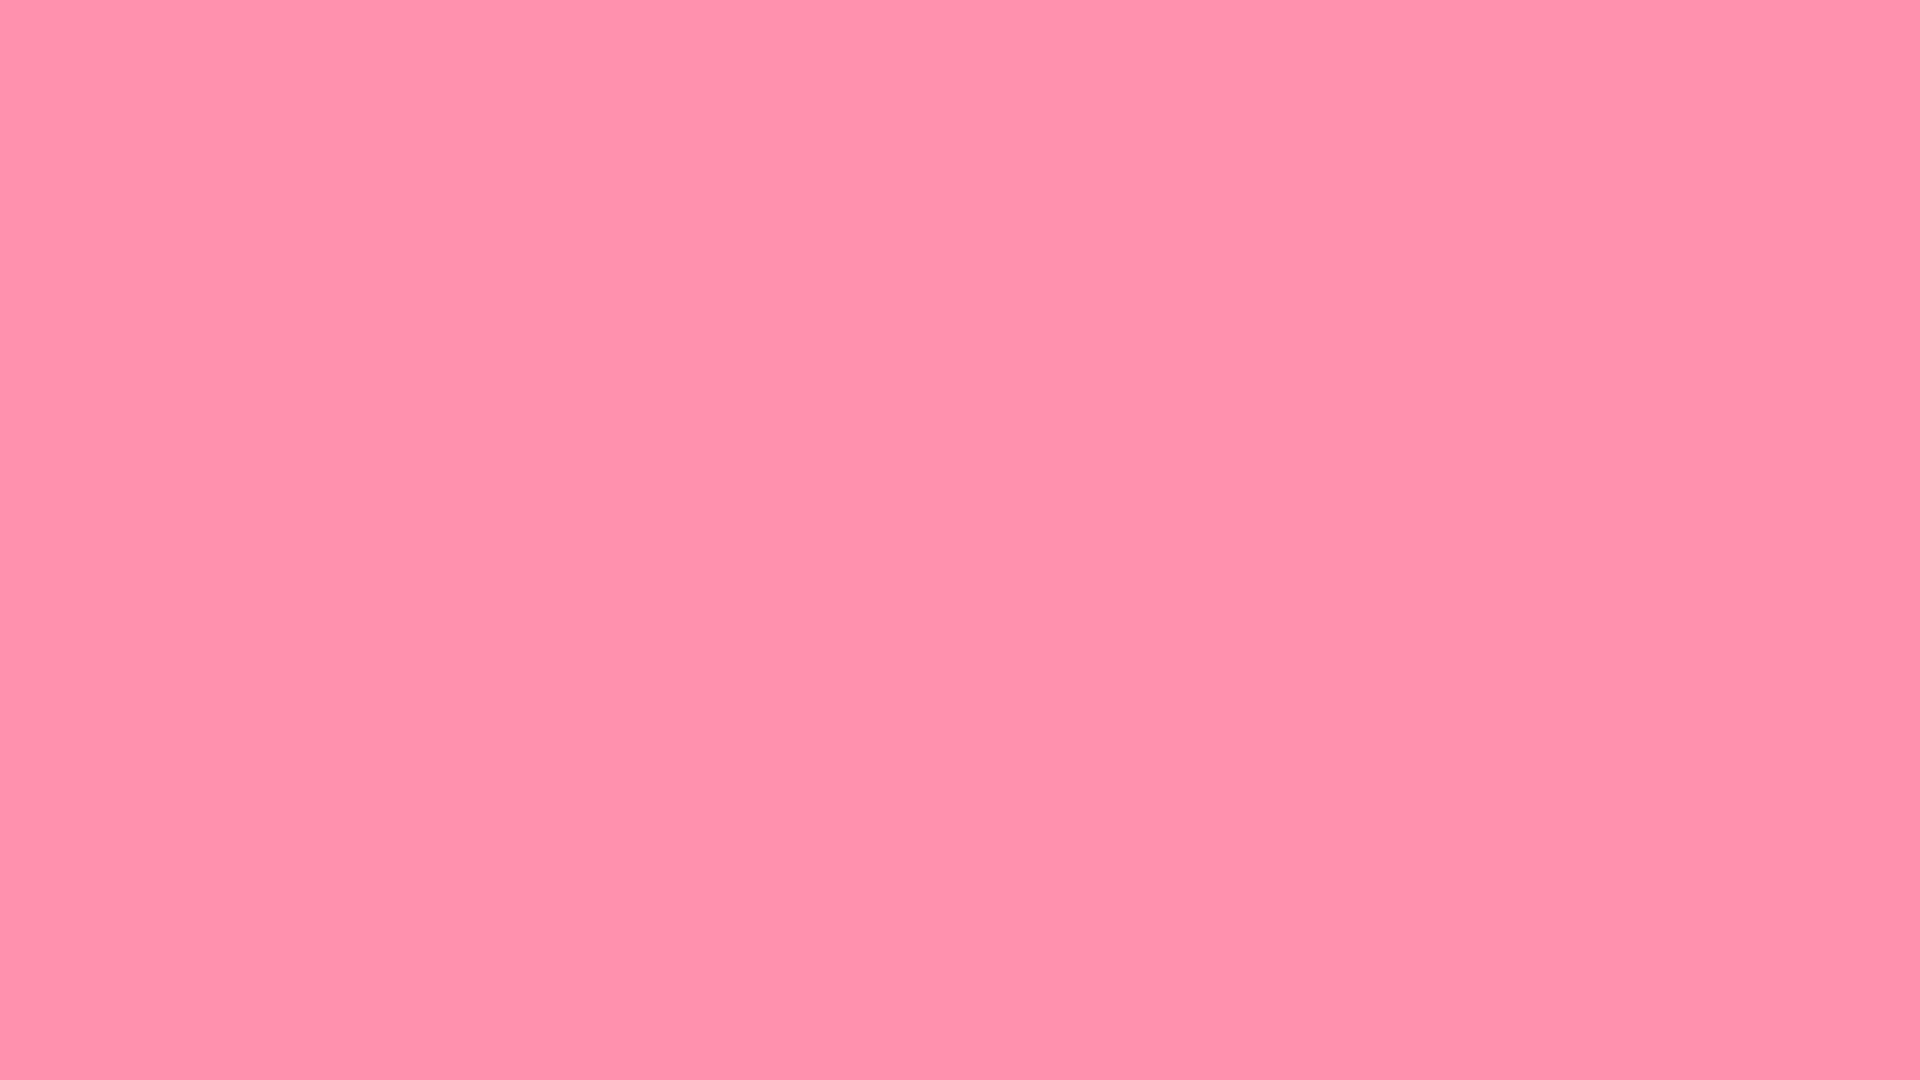 1920x1080 Baker-Miller Pink Solid Color Background